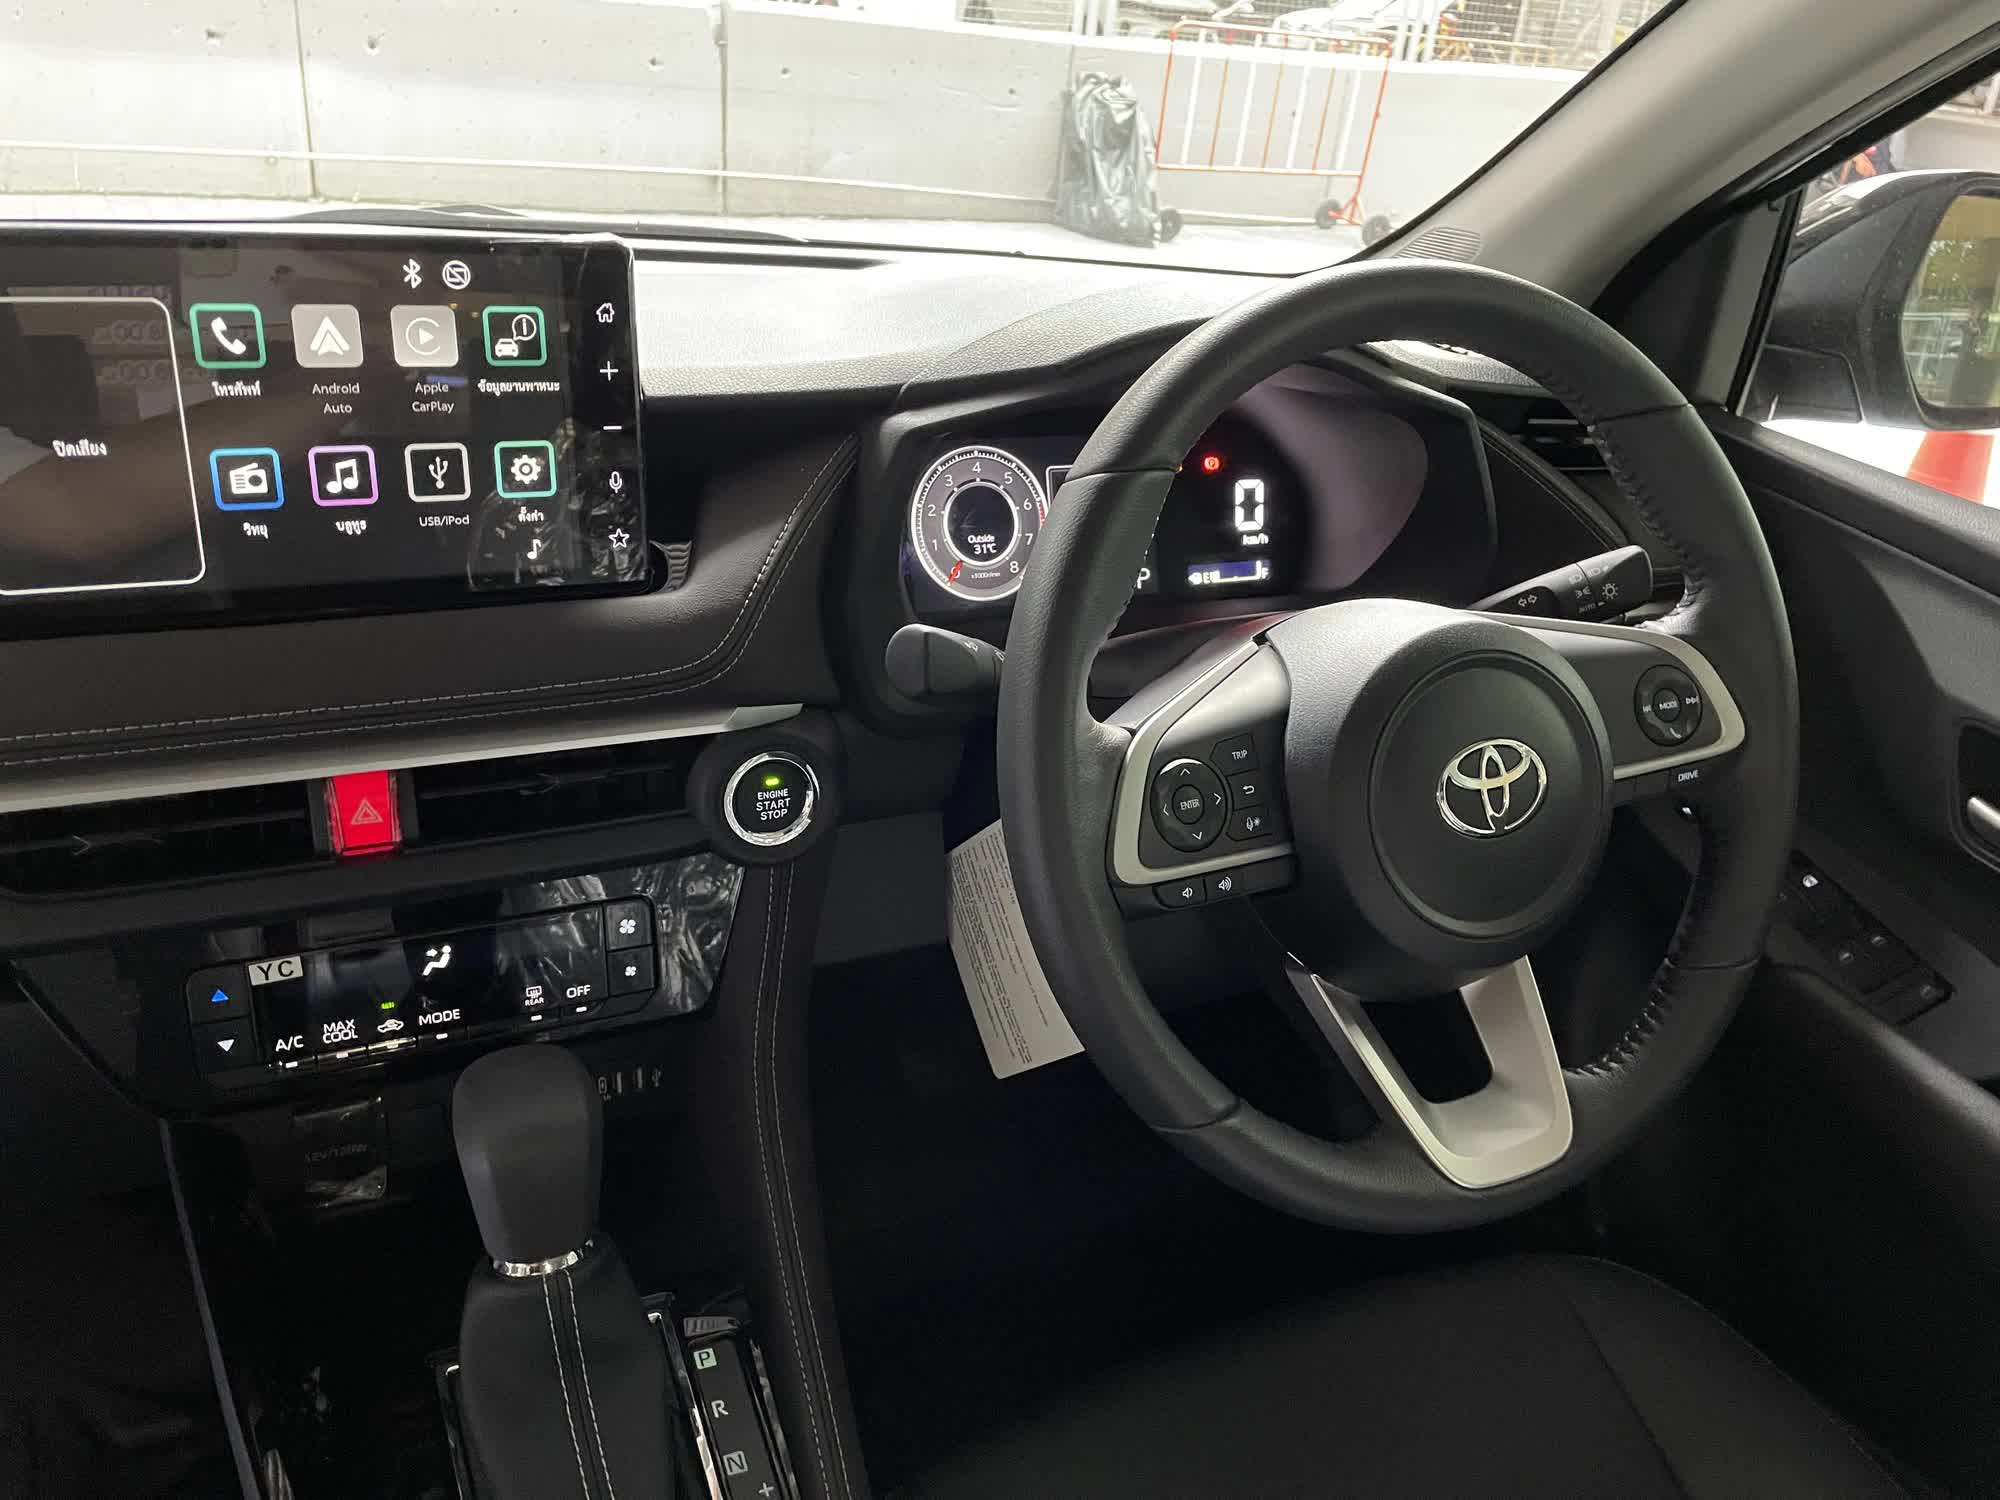 Trải nghiệm nhanh Toyota Vios thế hệ mới tại Thái Lan: Nhiều nâng cấp để có thể thành vua phân khúc - Ảnh 8.